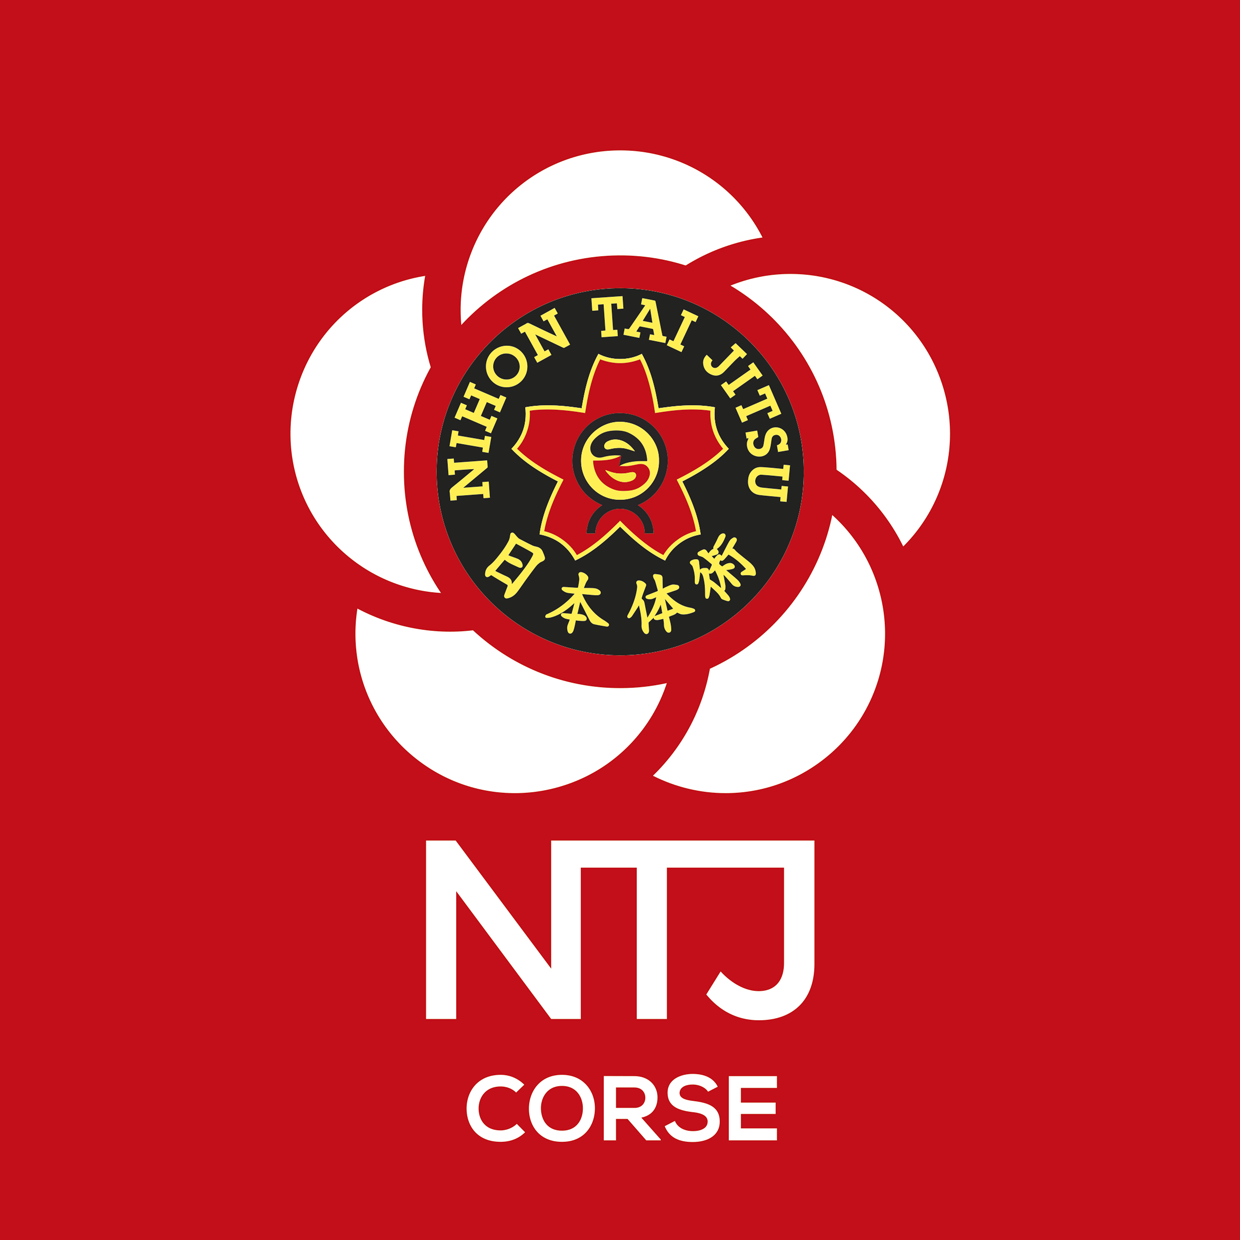 NTJ region CORSE logo rvb